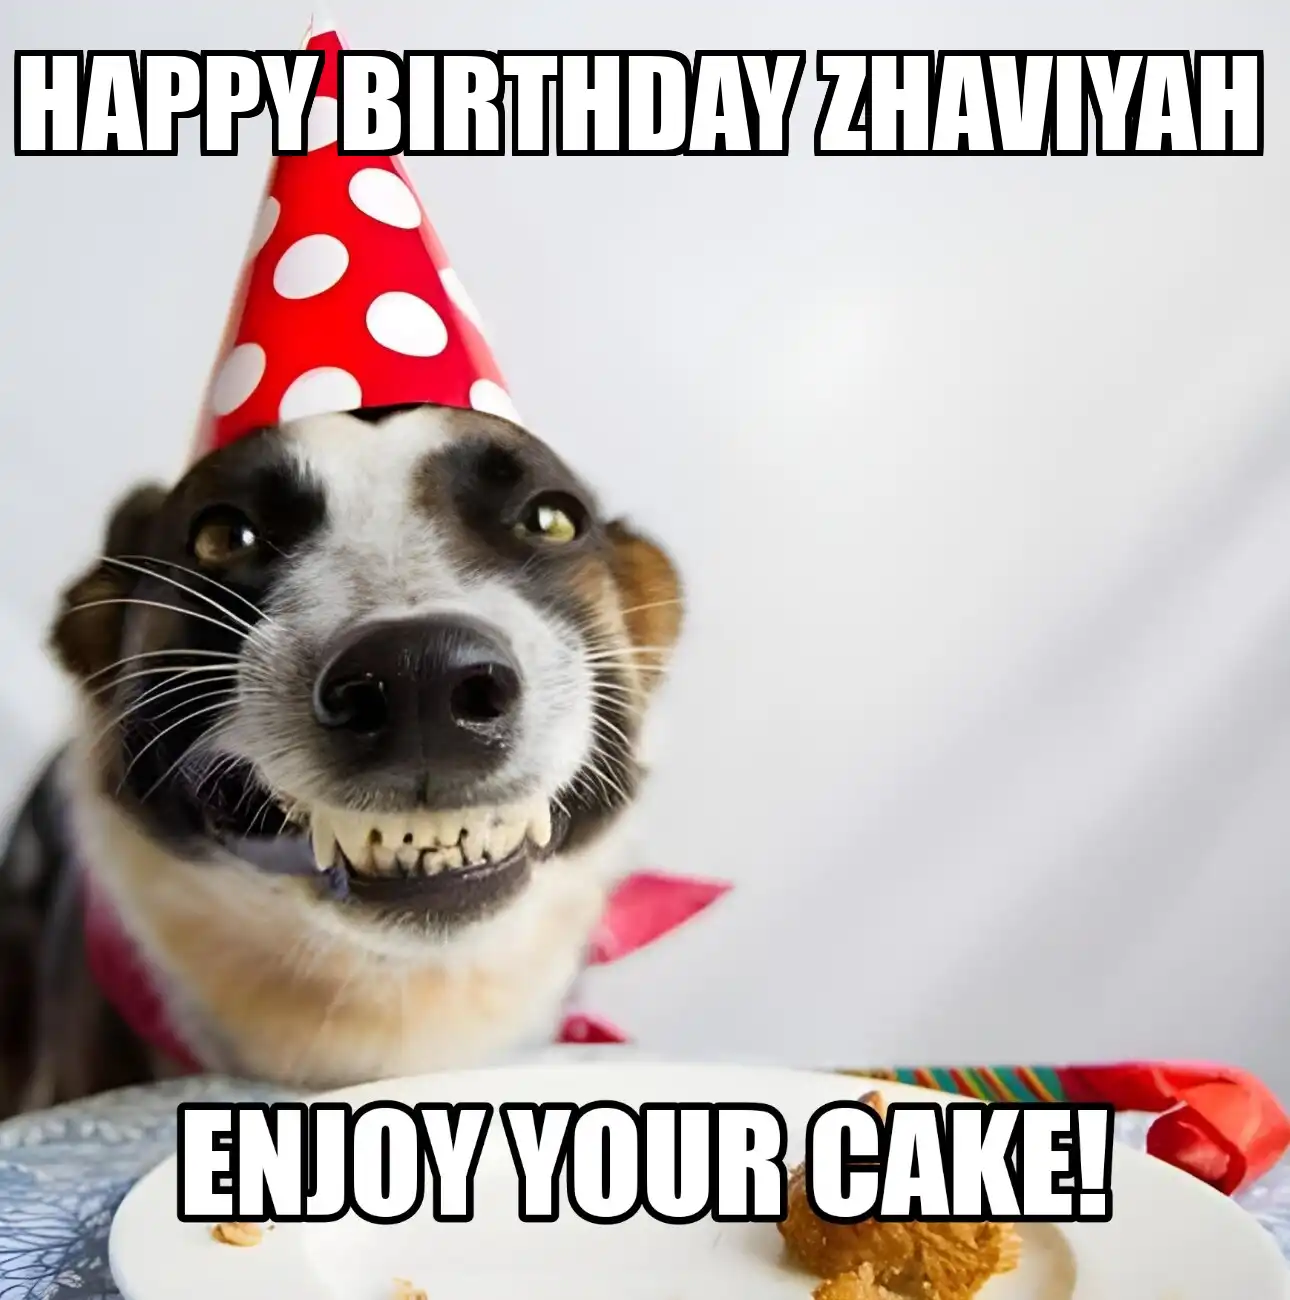 Happy Birthday Zhaviyah Enjoy Your Cake Dog Meme